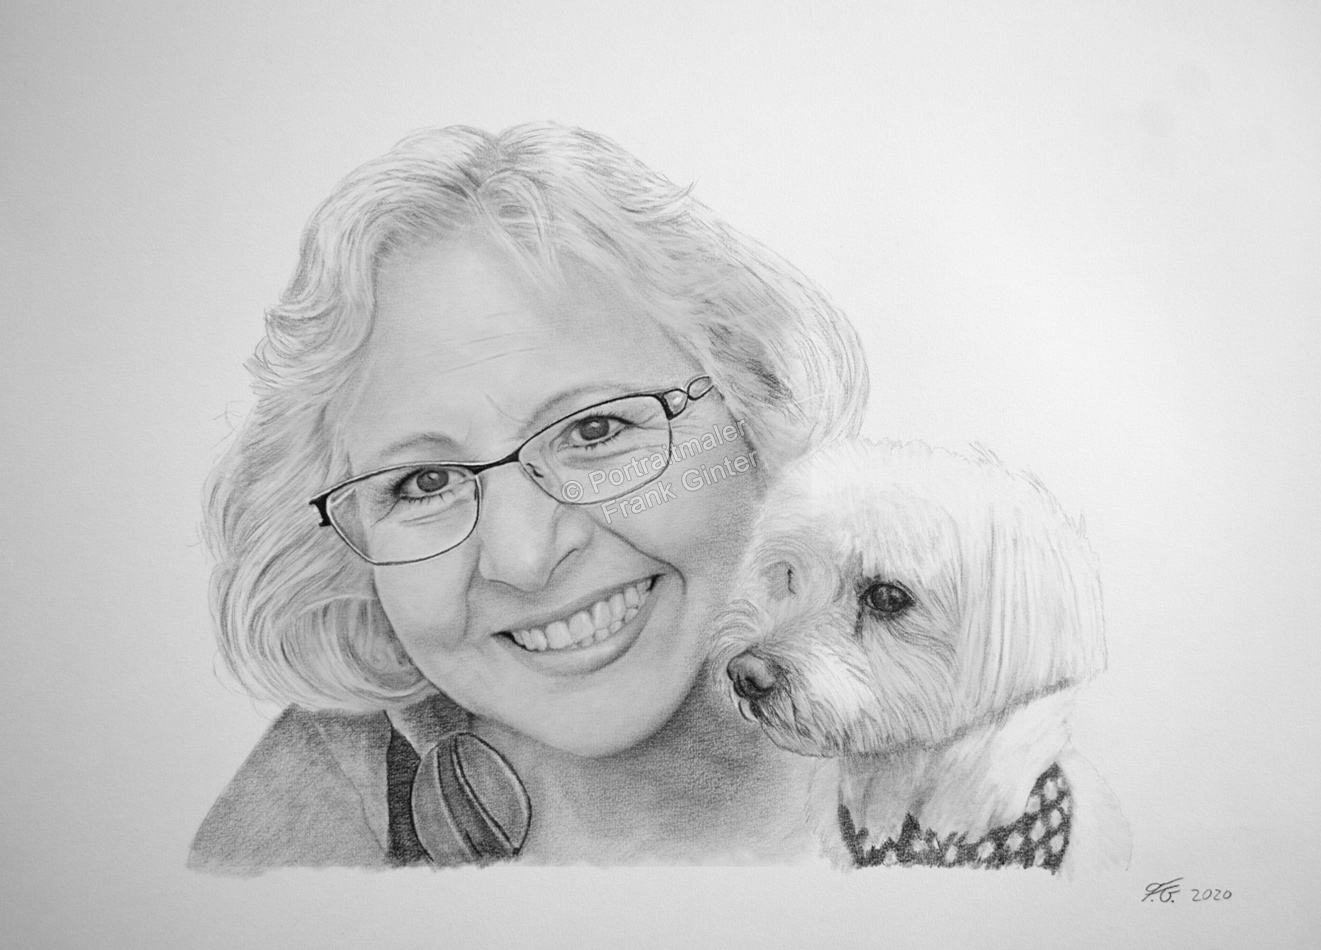 Bleistiftzeichnungen, gezeichnetes Tierportrait, Frau mit Ihrem Hund mit Bleistiften gezeichnet